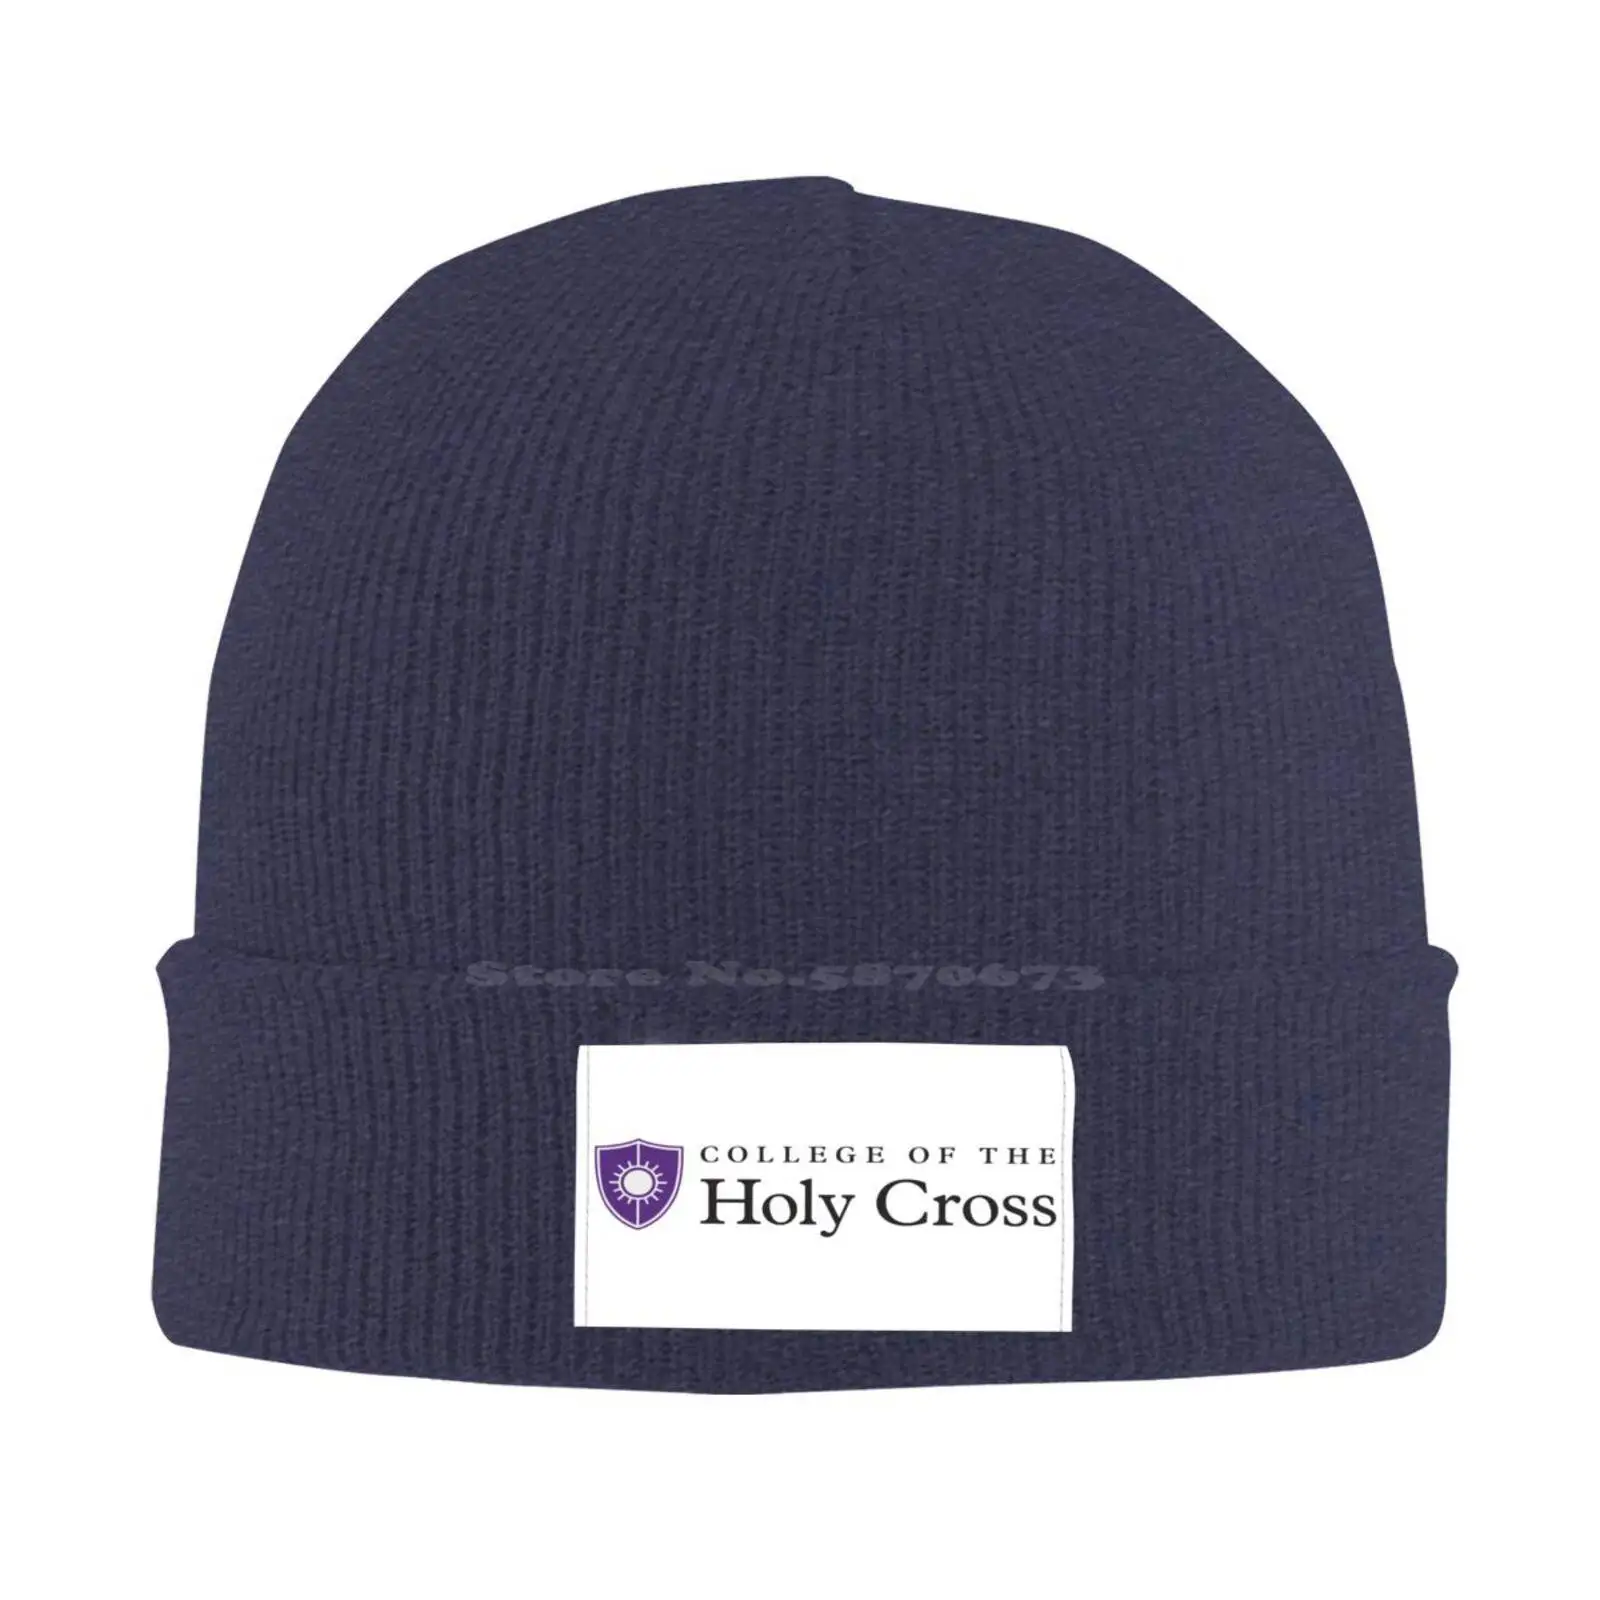 

Модная бейсбольная кепка с логотипом Колледжа Святого Креста